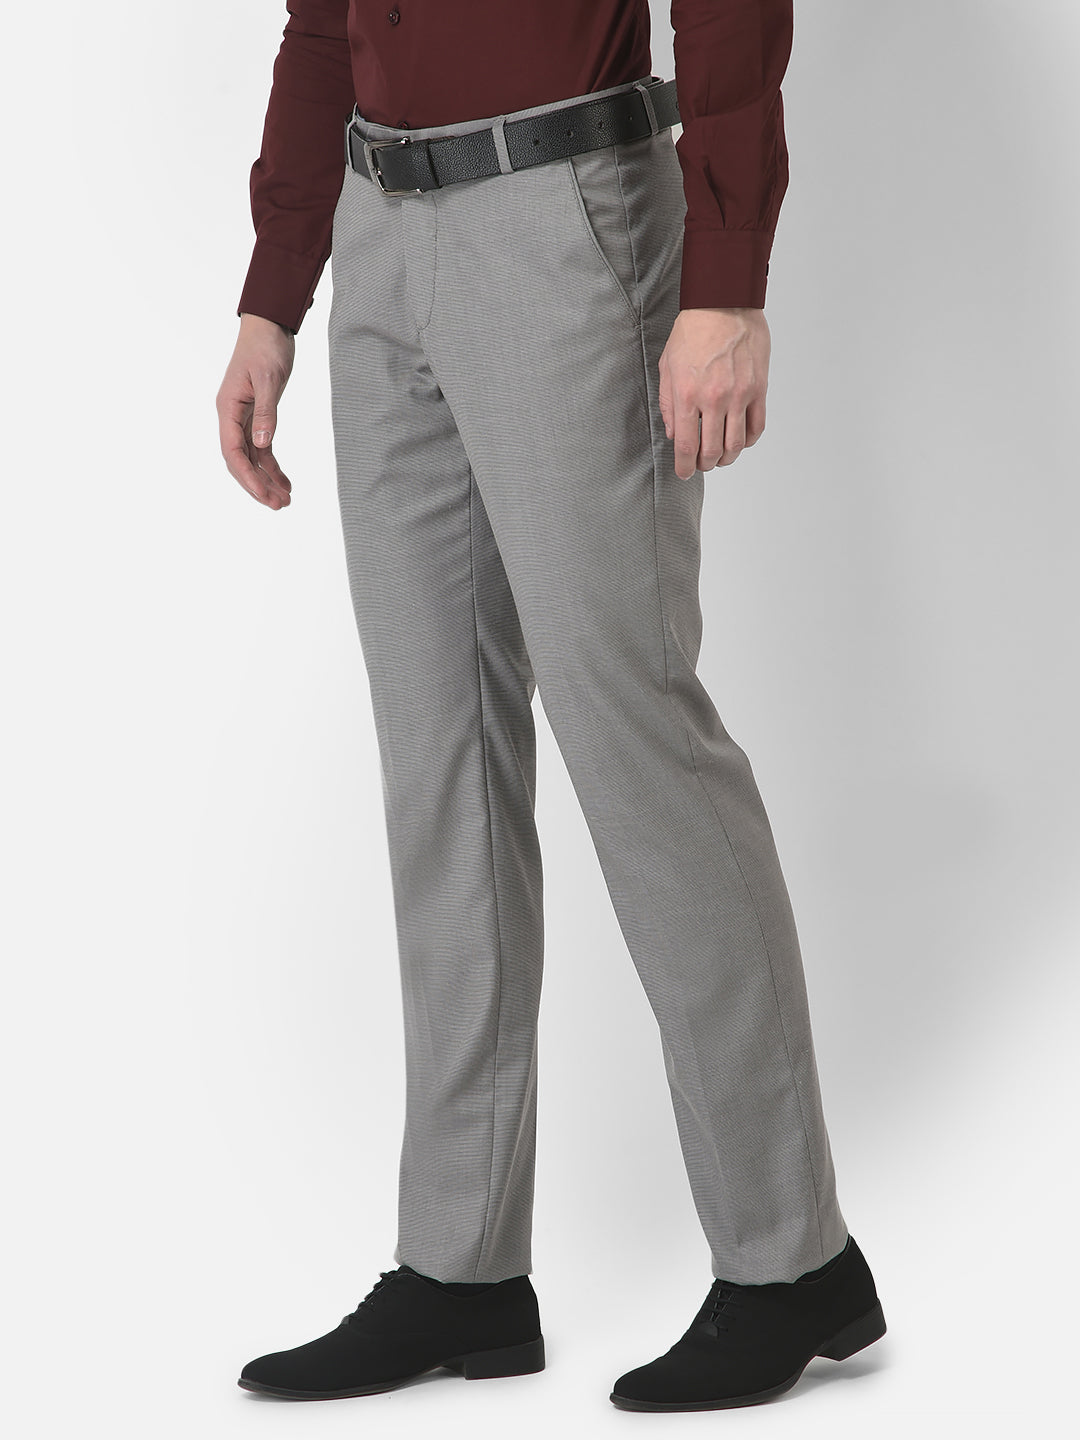 COBB Slim Fit Men Grey Trousers - Buy COBB Slim Fit Men Grey Trousers  Online at Best Prices in India | Flipkart.com